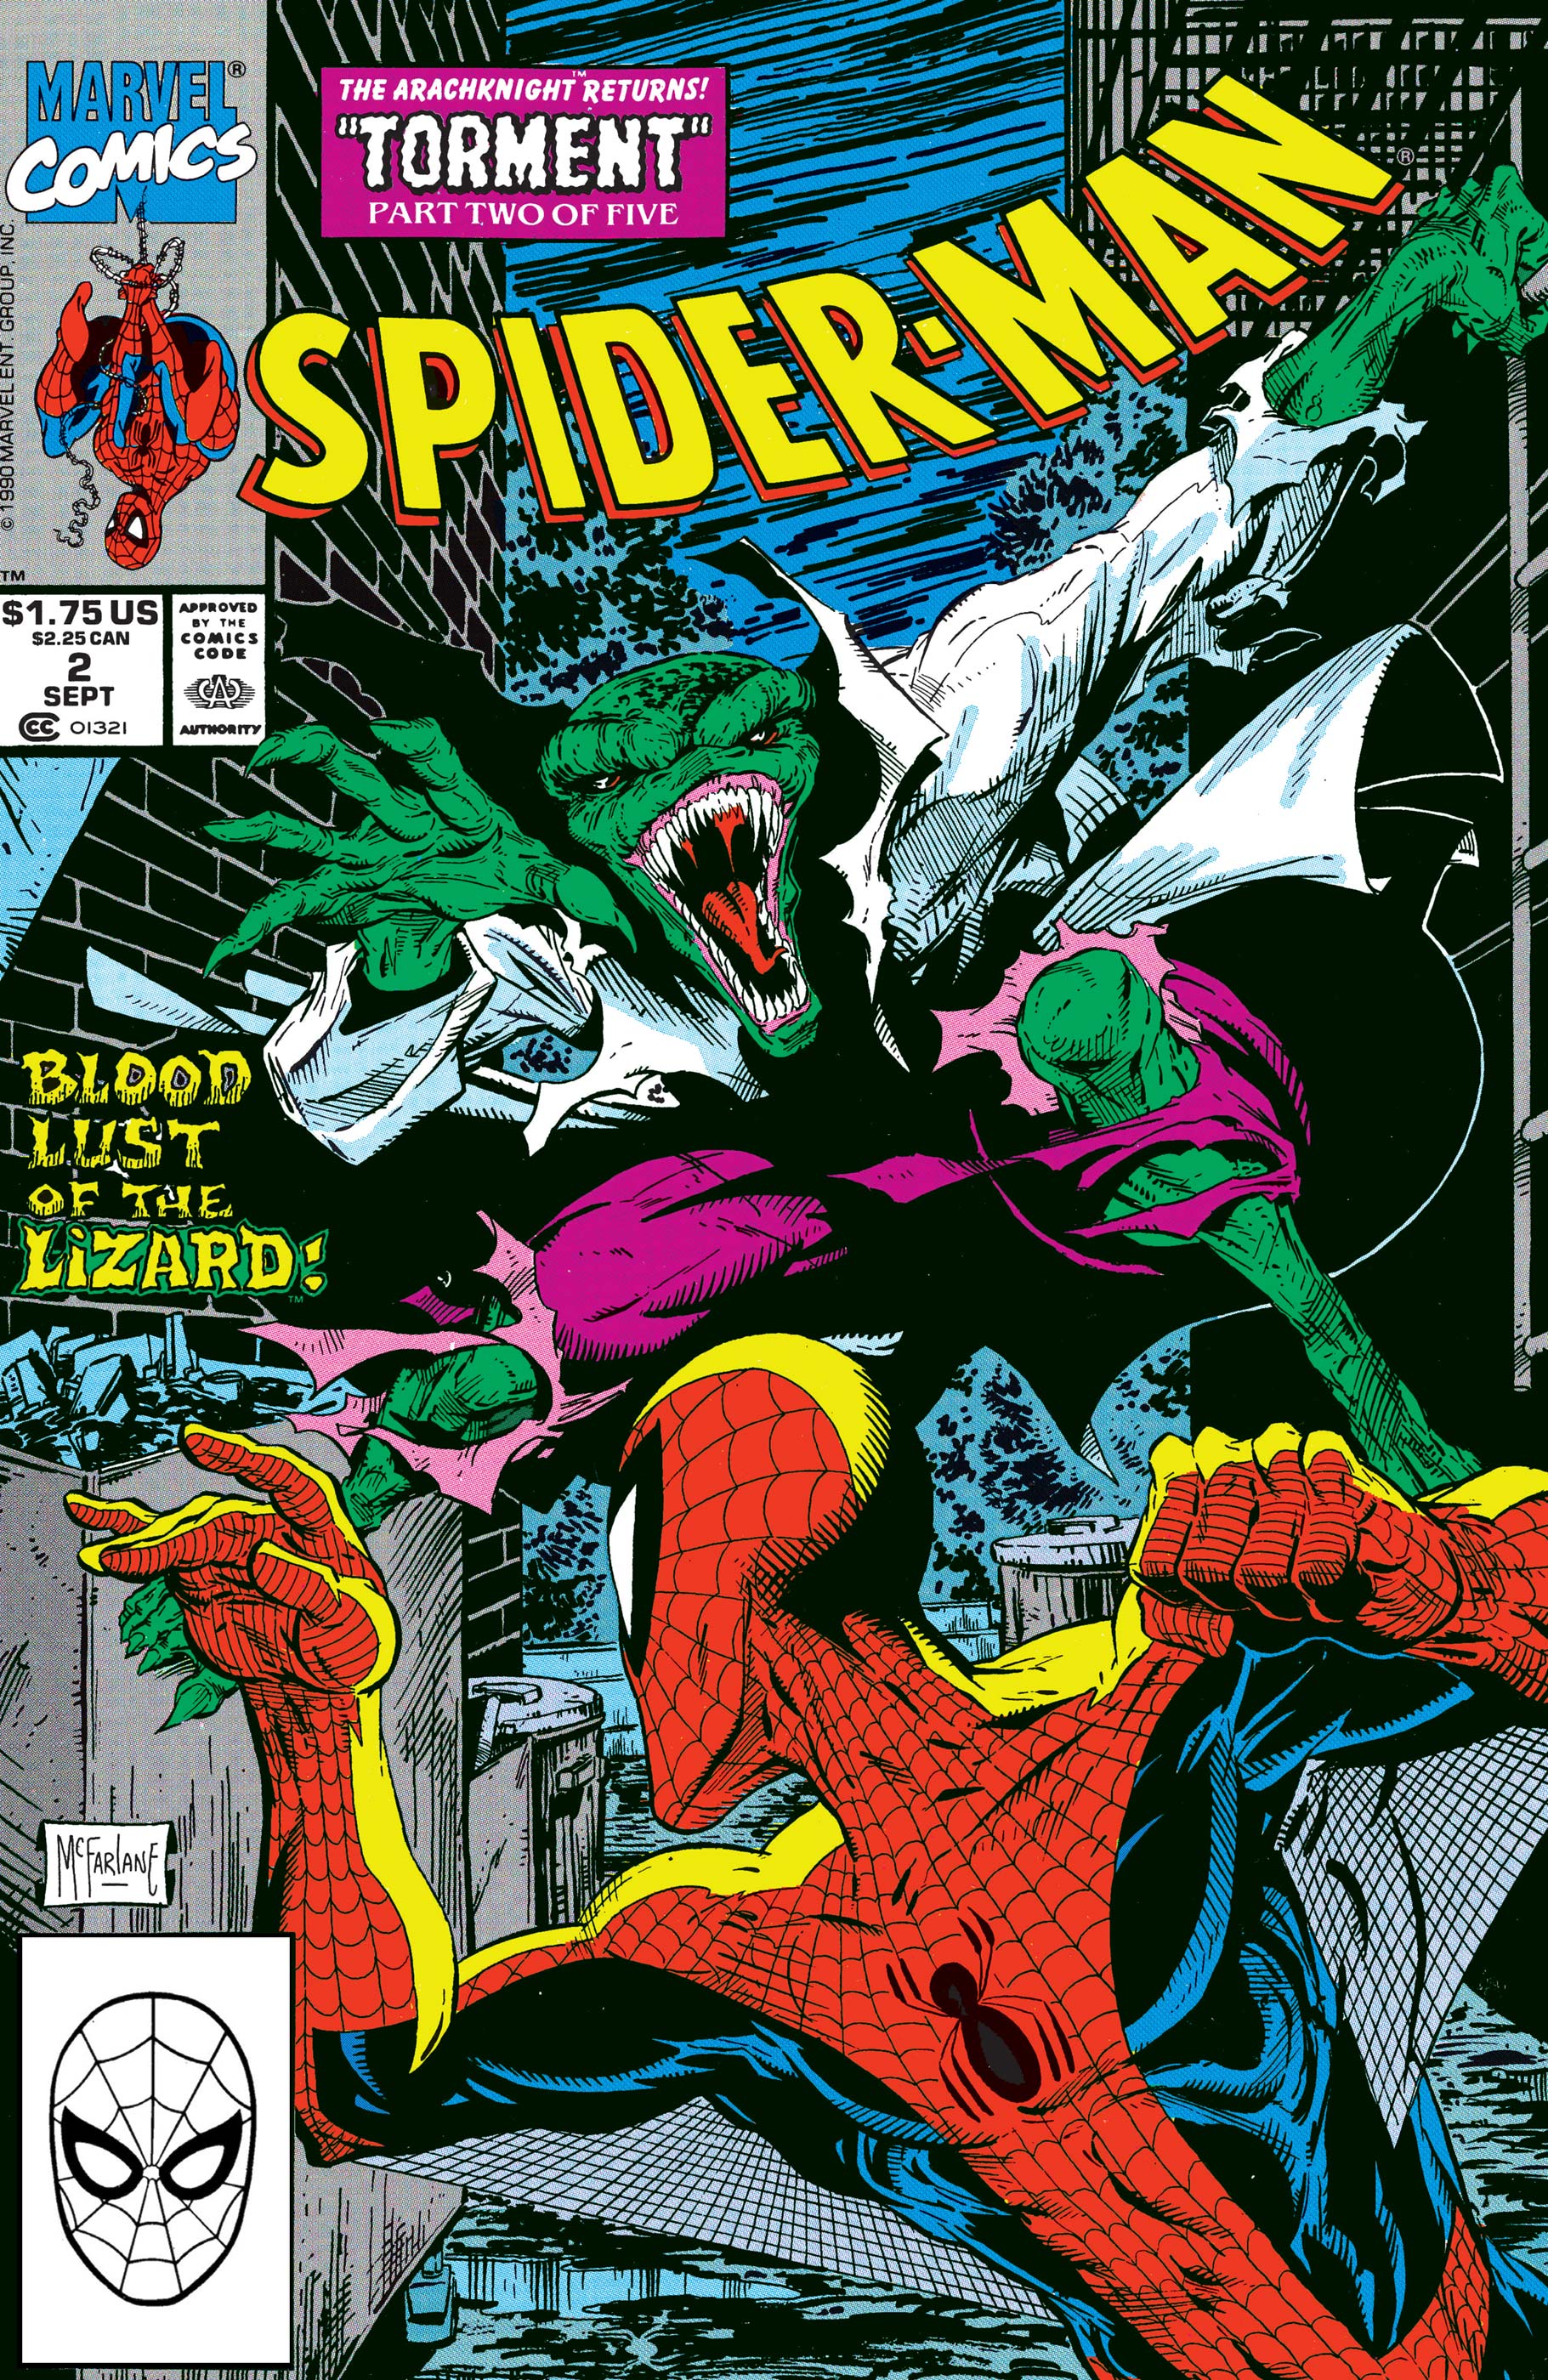 Spider-Man (1990) #2